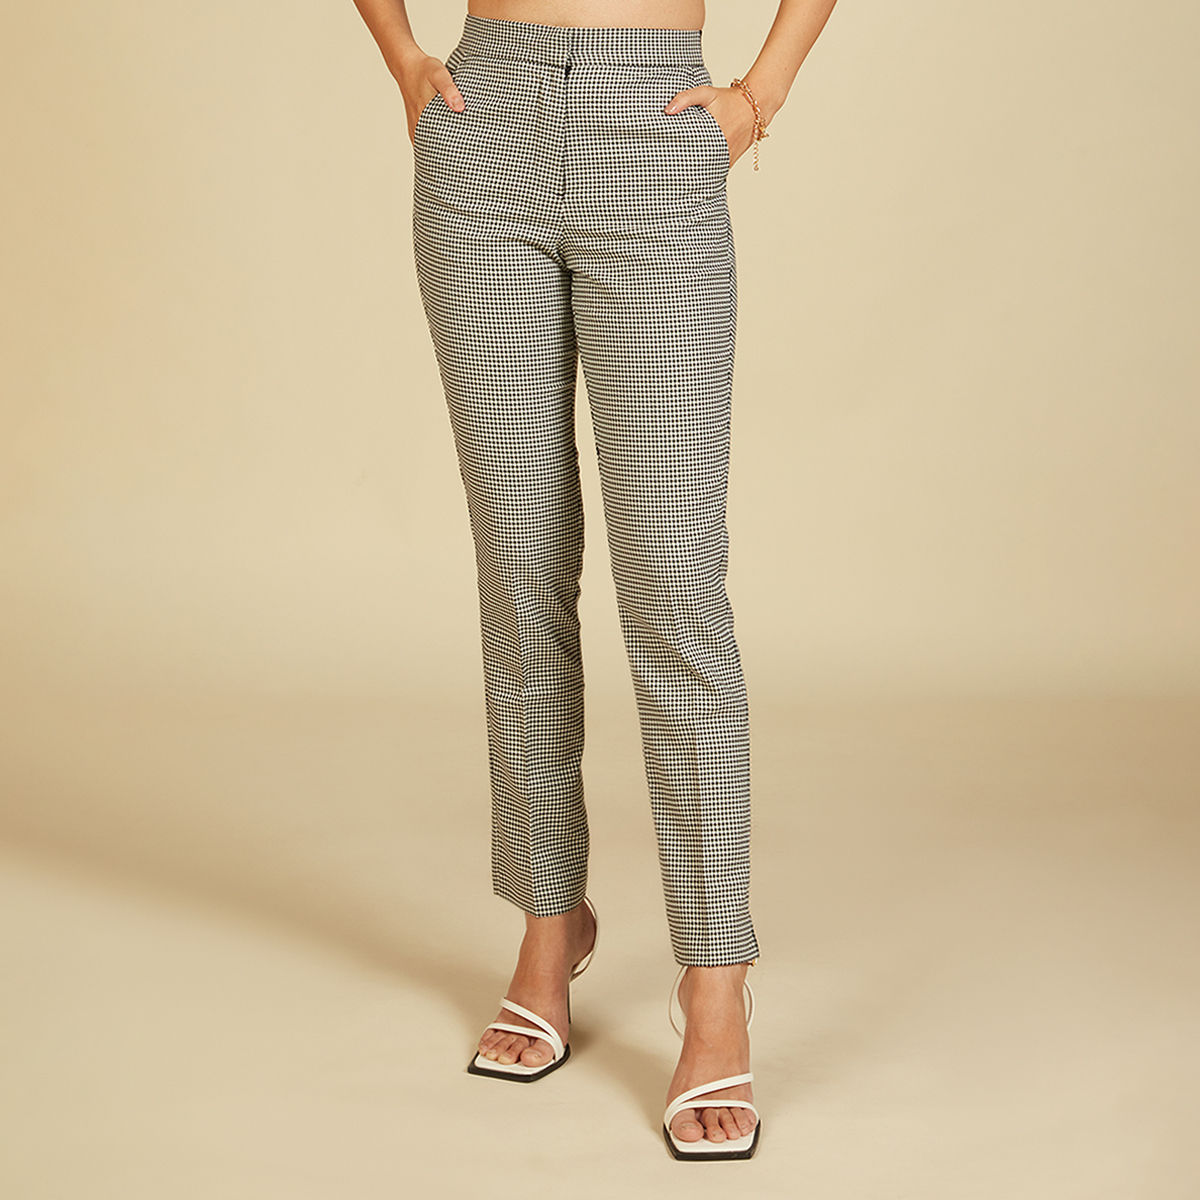 Buy Olive Grey Trousers  Pants for Men by BLACKBERRYS Online  Ajiocom